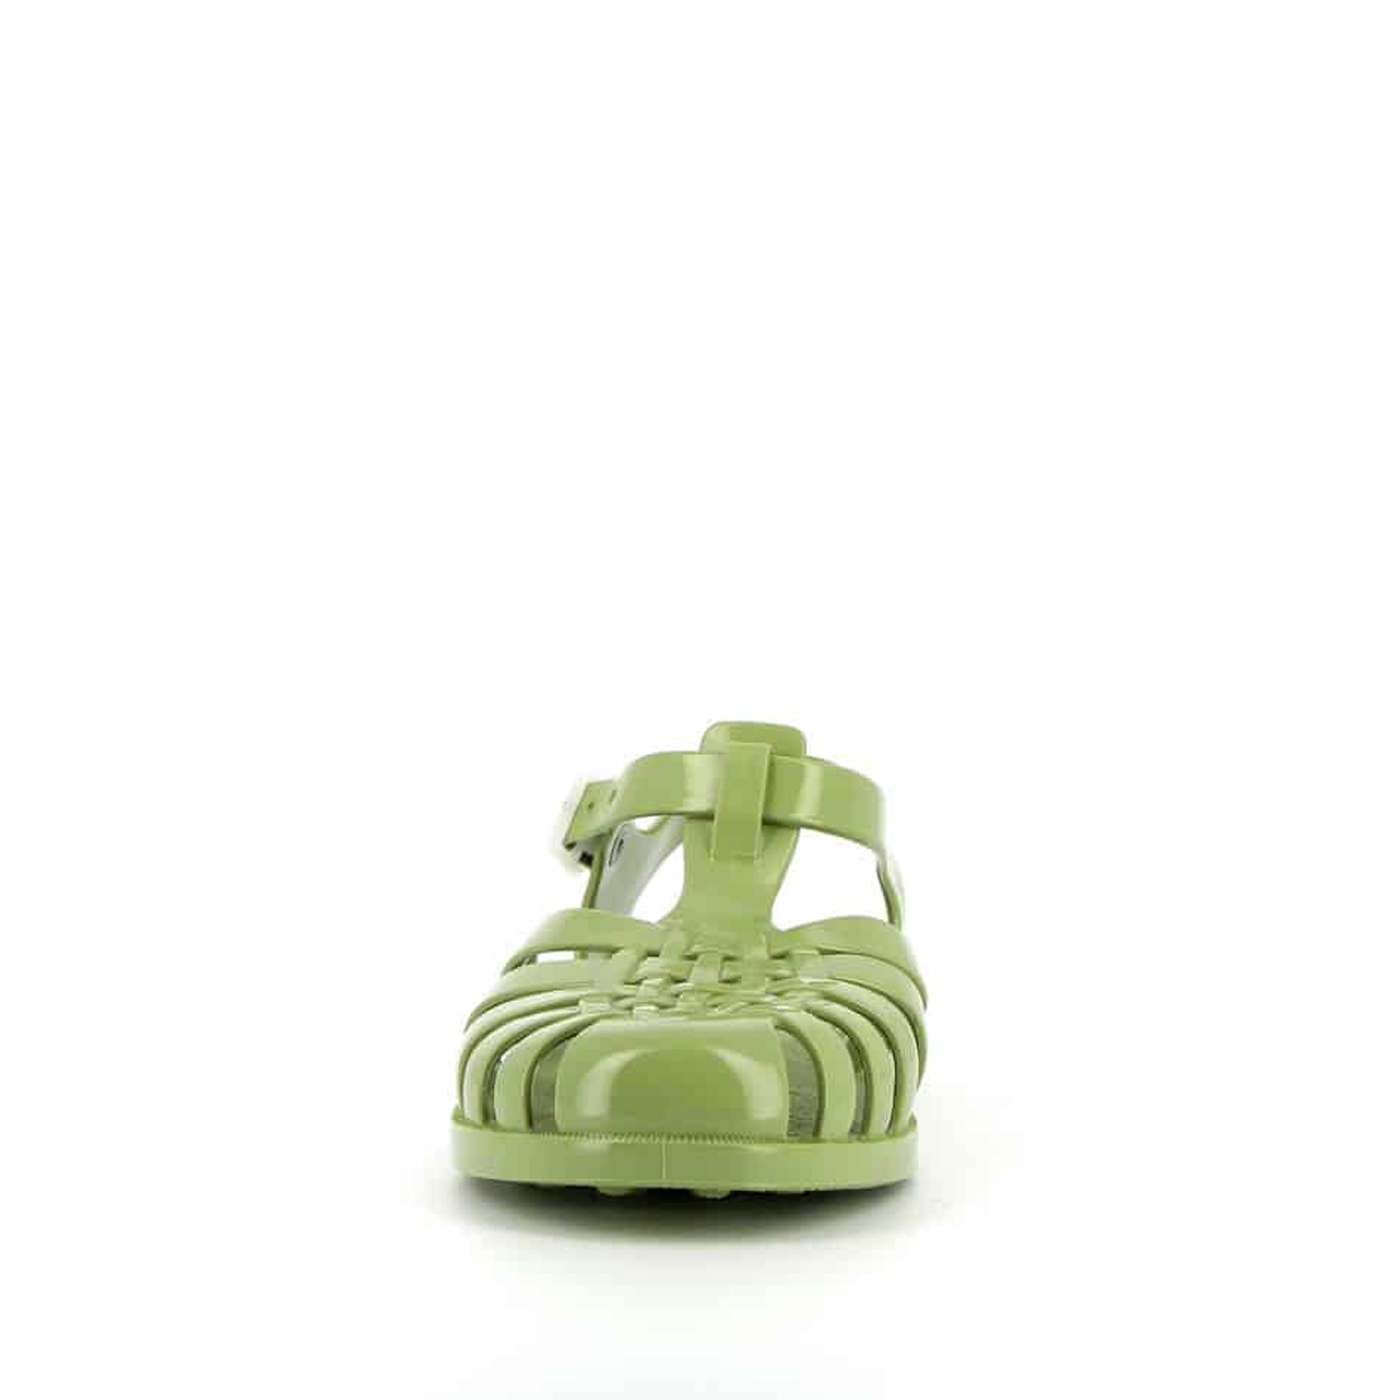 MEDUSE Meduse Sun Olive Sandals - Yetişkin Sandalet | Olive